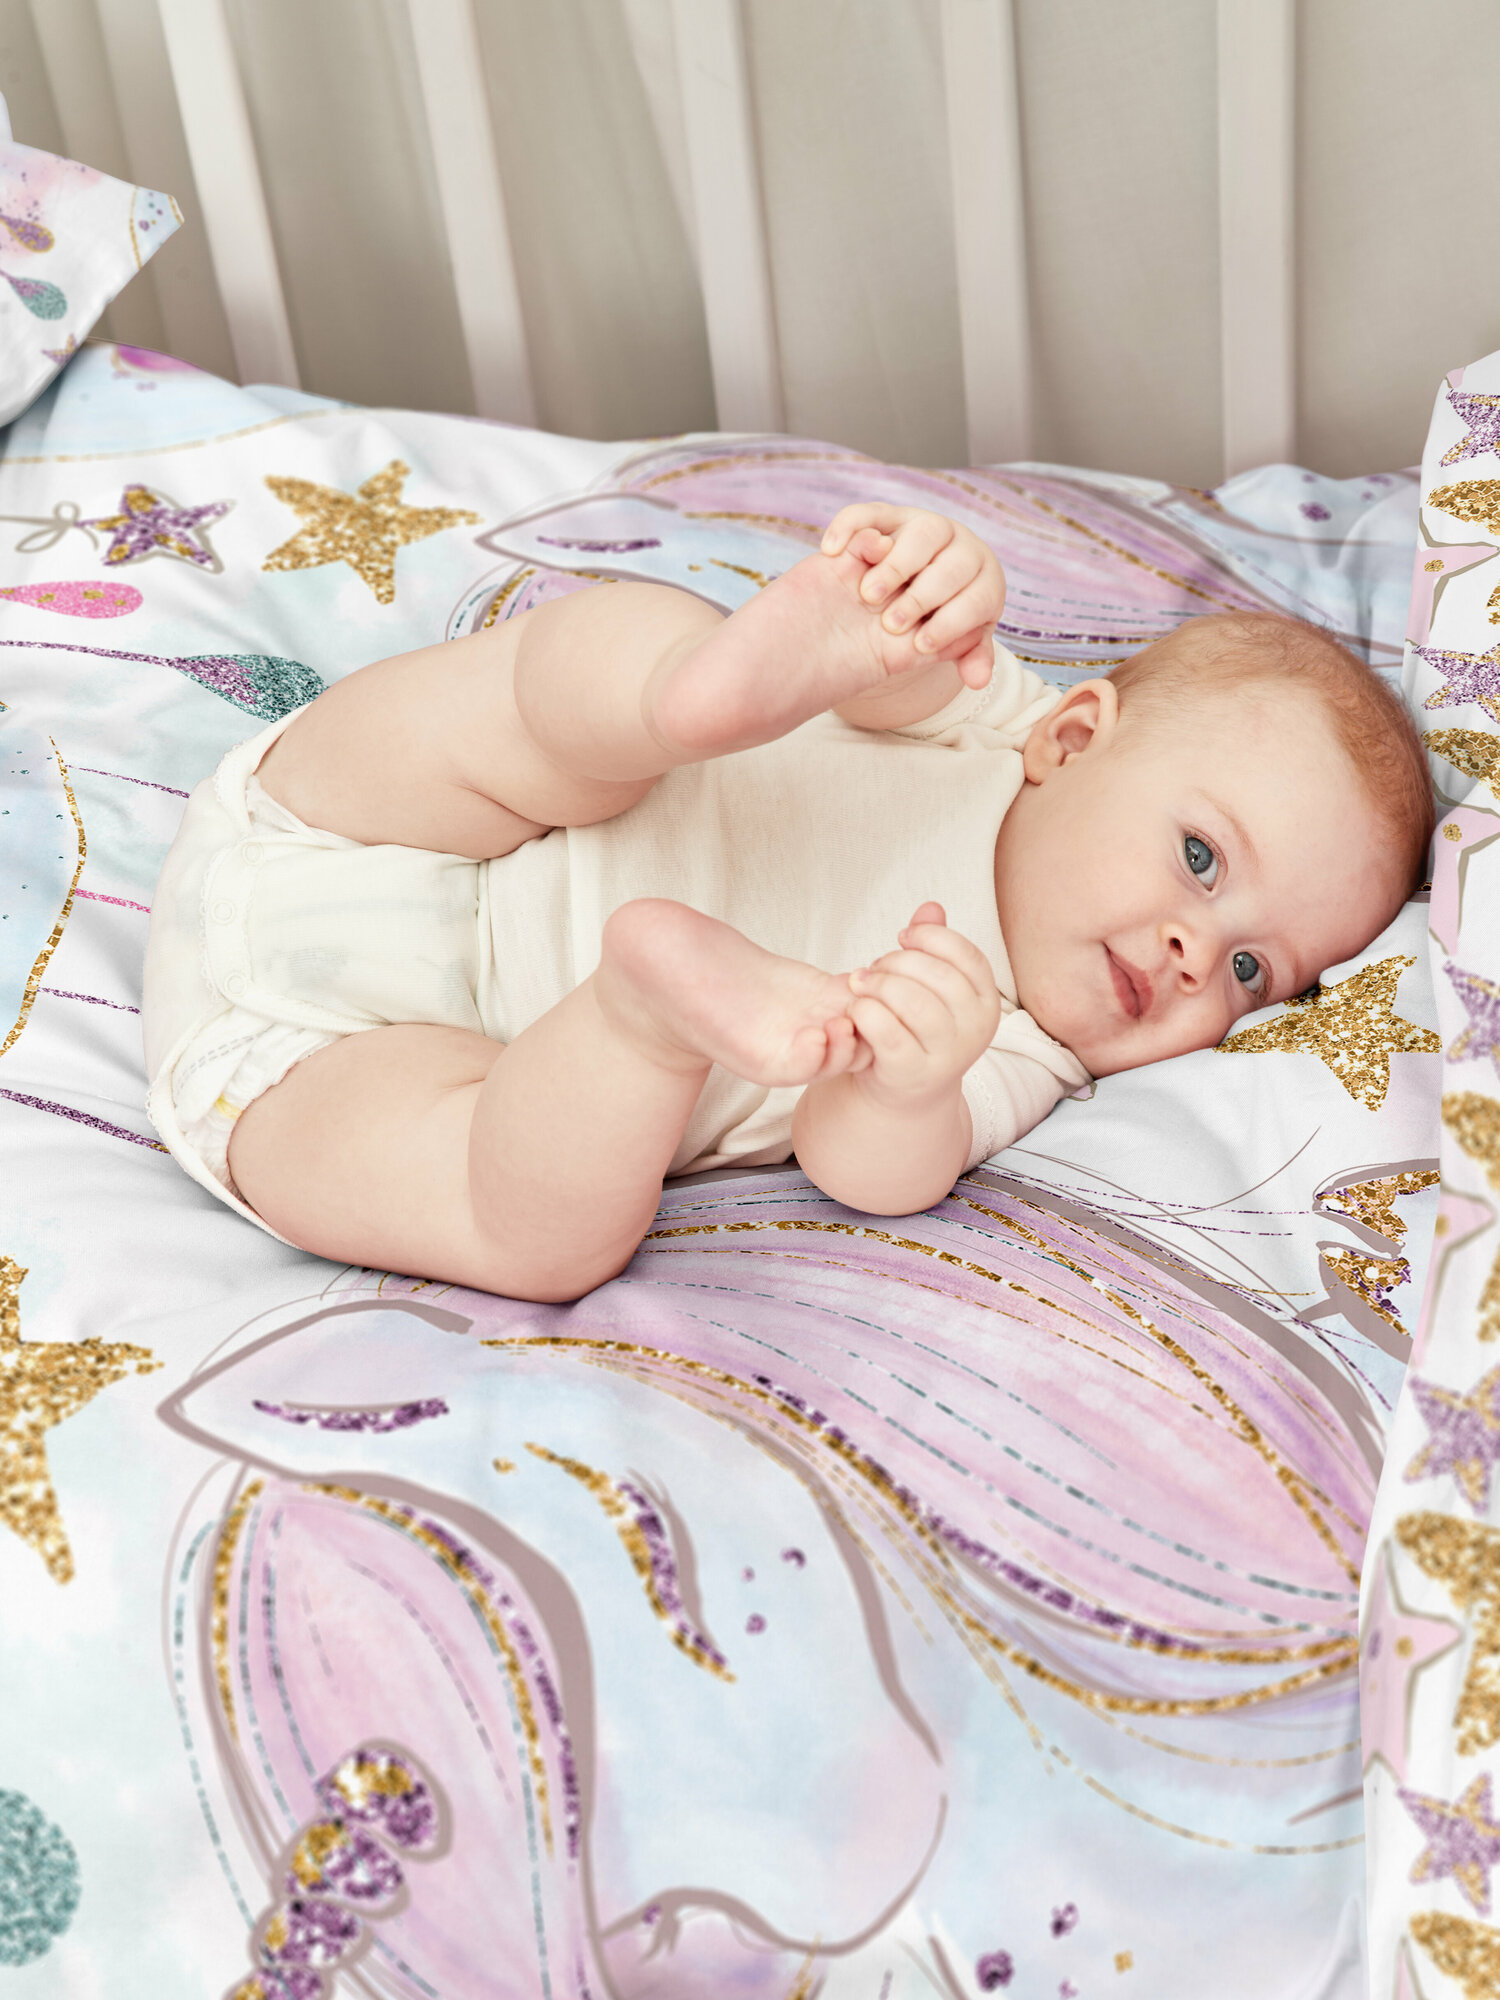 Детское постельное белье в кроватку для новорожденного Juno, поплин хлопок, 1 наволочка 40х60, постельное белье детское Unicorns / Единорожки, комплект для девочки